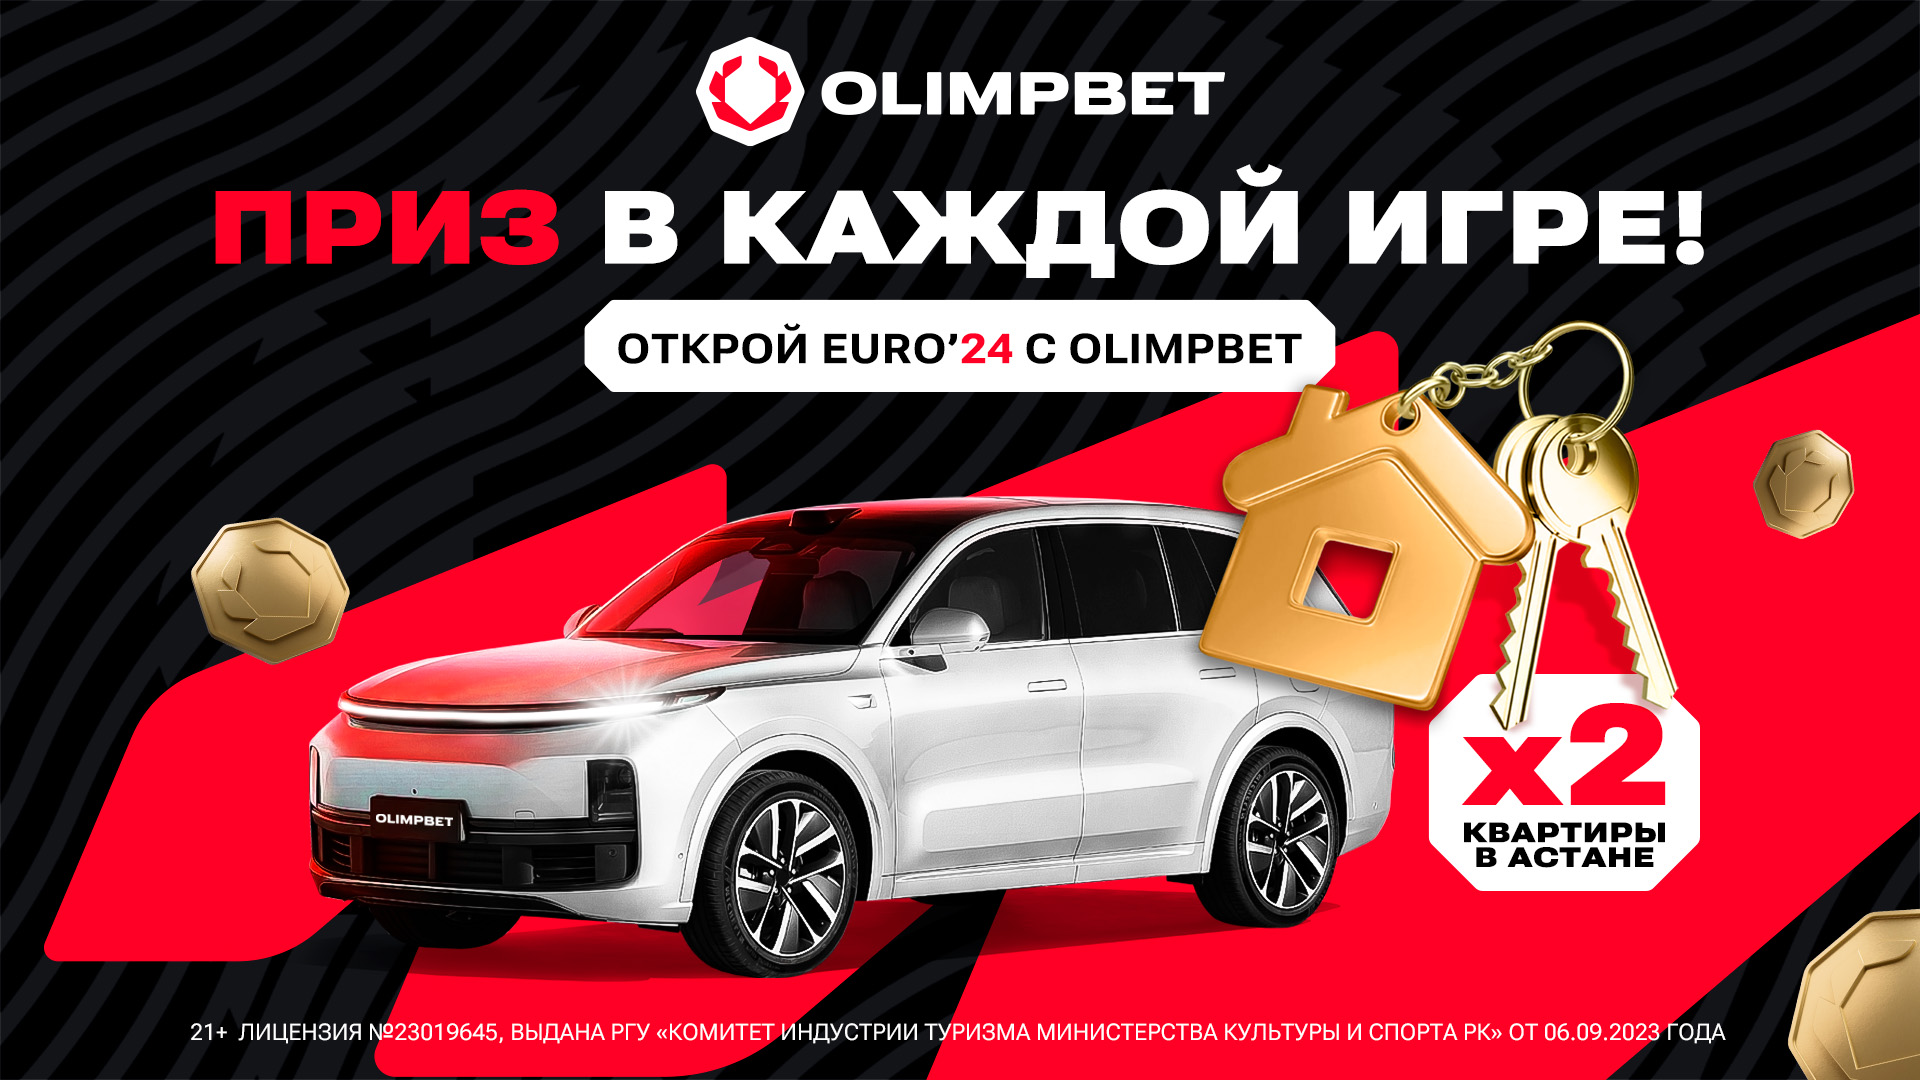 Olimpbet предлагает гарантированные призы в акции «ОТКРОЙ EURO’24»